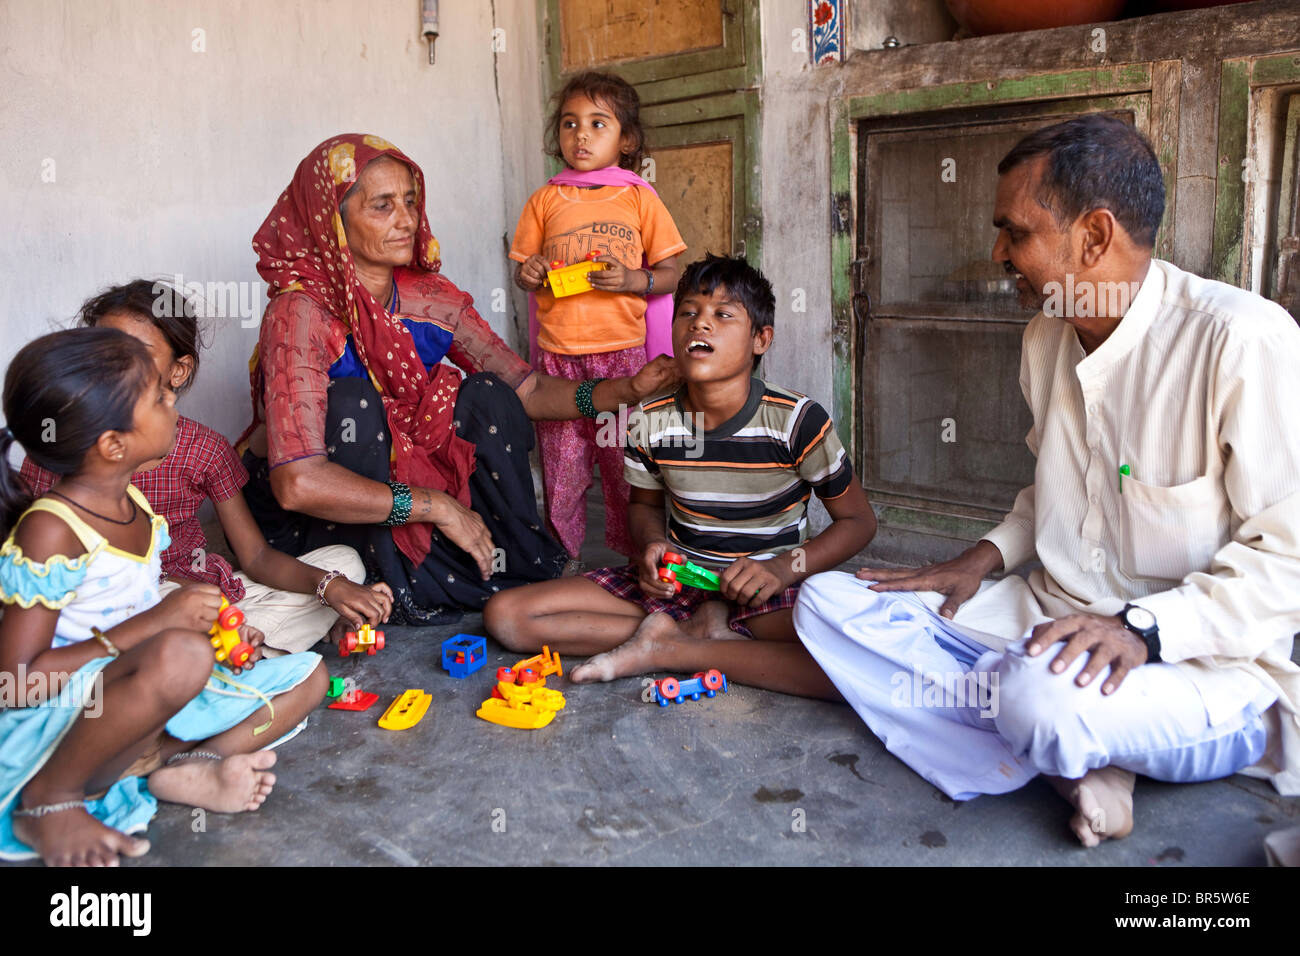 10-j hrige Meena, die taub und blind ist erforscht den Tastsinn mit ihrer Bausteine mit Hilfe ihrer Familie. Indien. Stockfoto